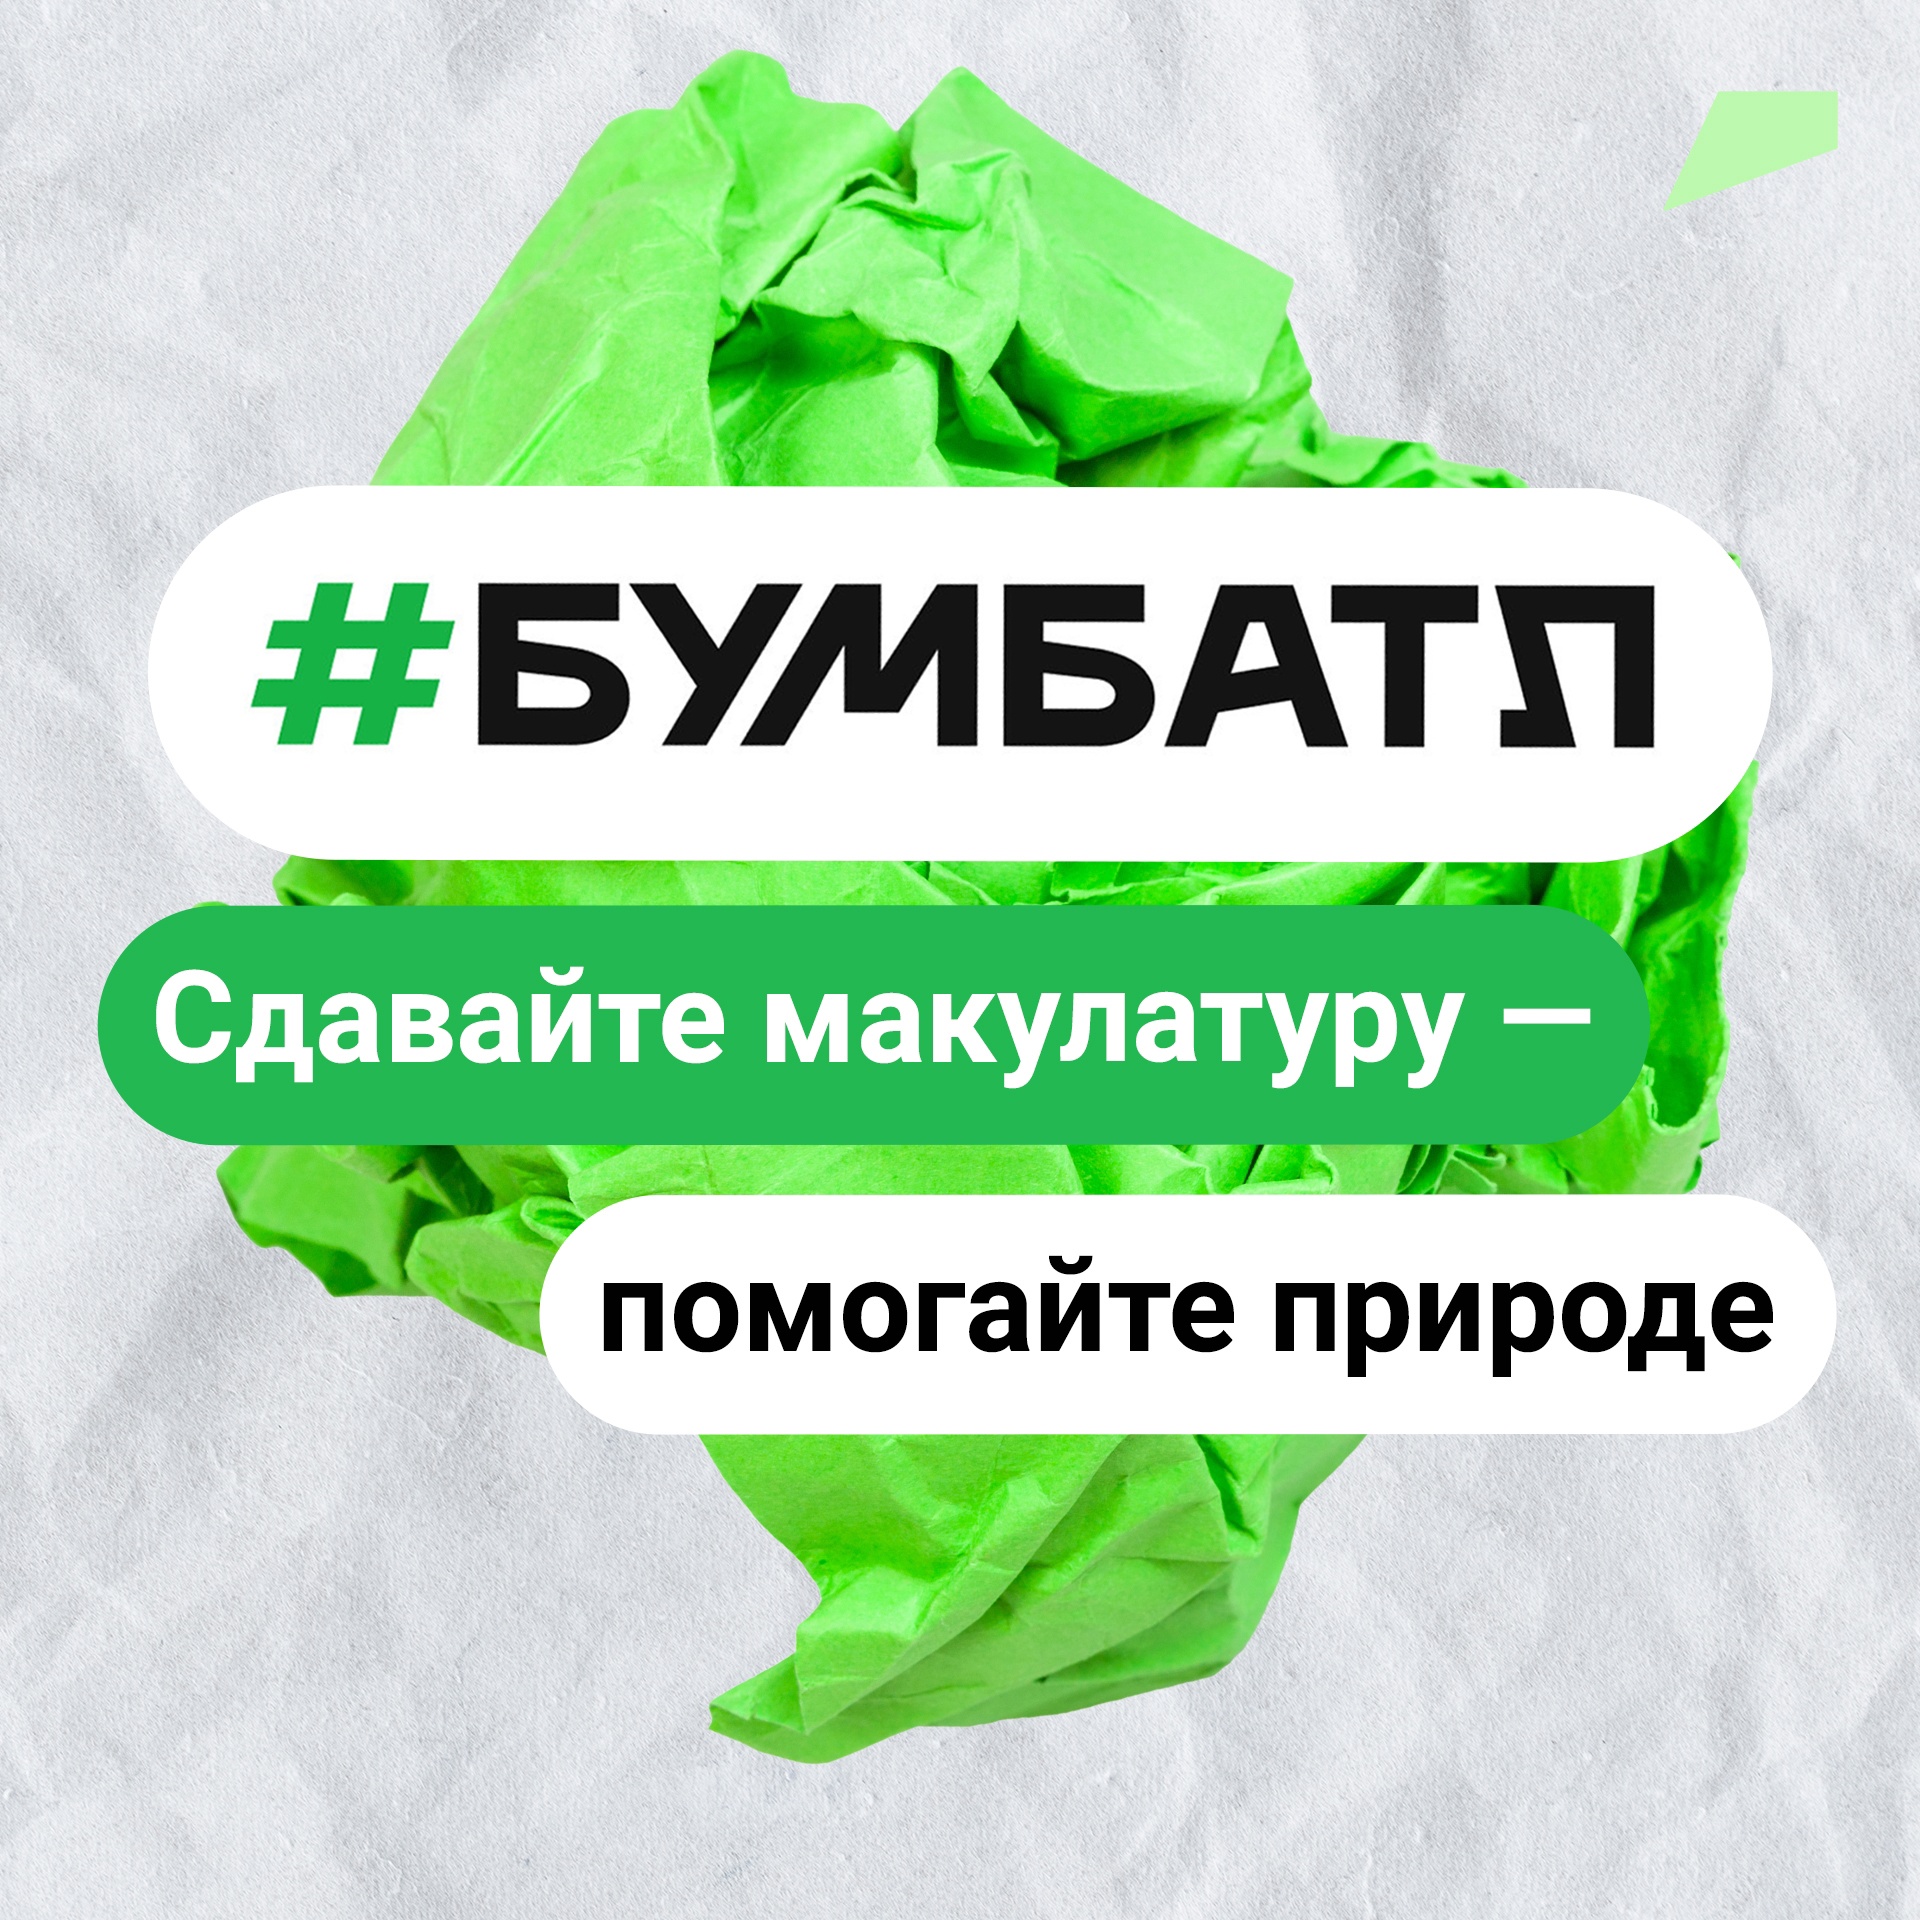 К Всемирному дню без бумаги в Белгородской области собрали в рамках акции «БумБатл» 5,6 тонны макулатуры.